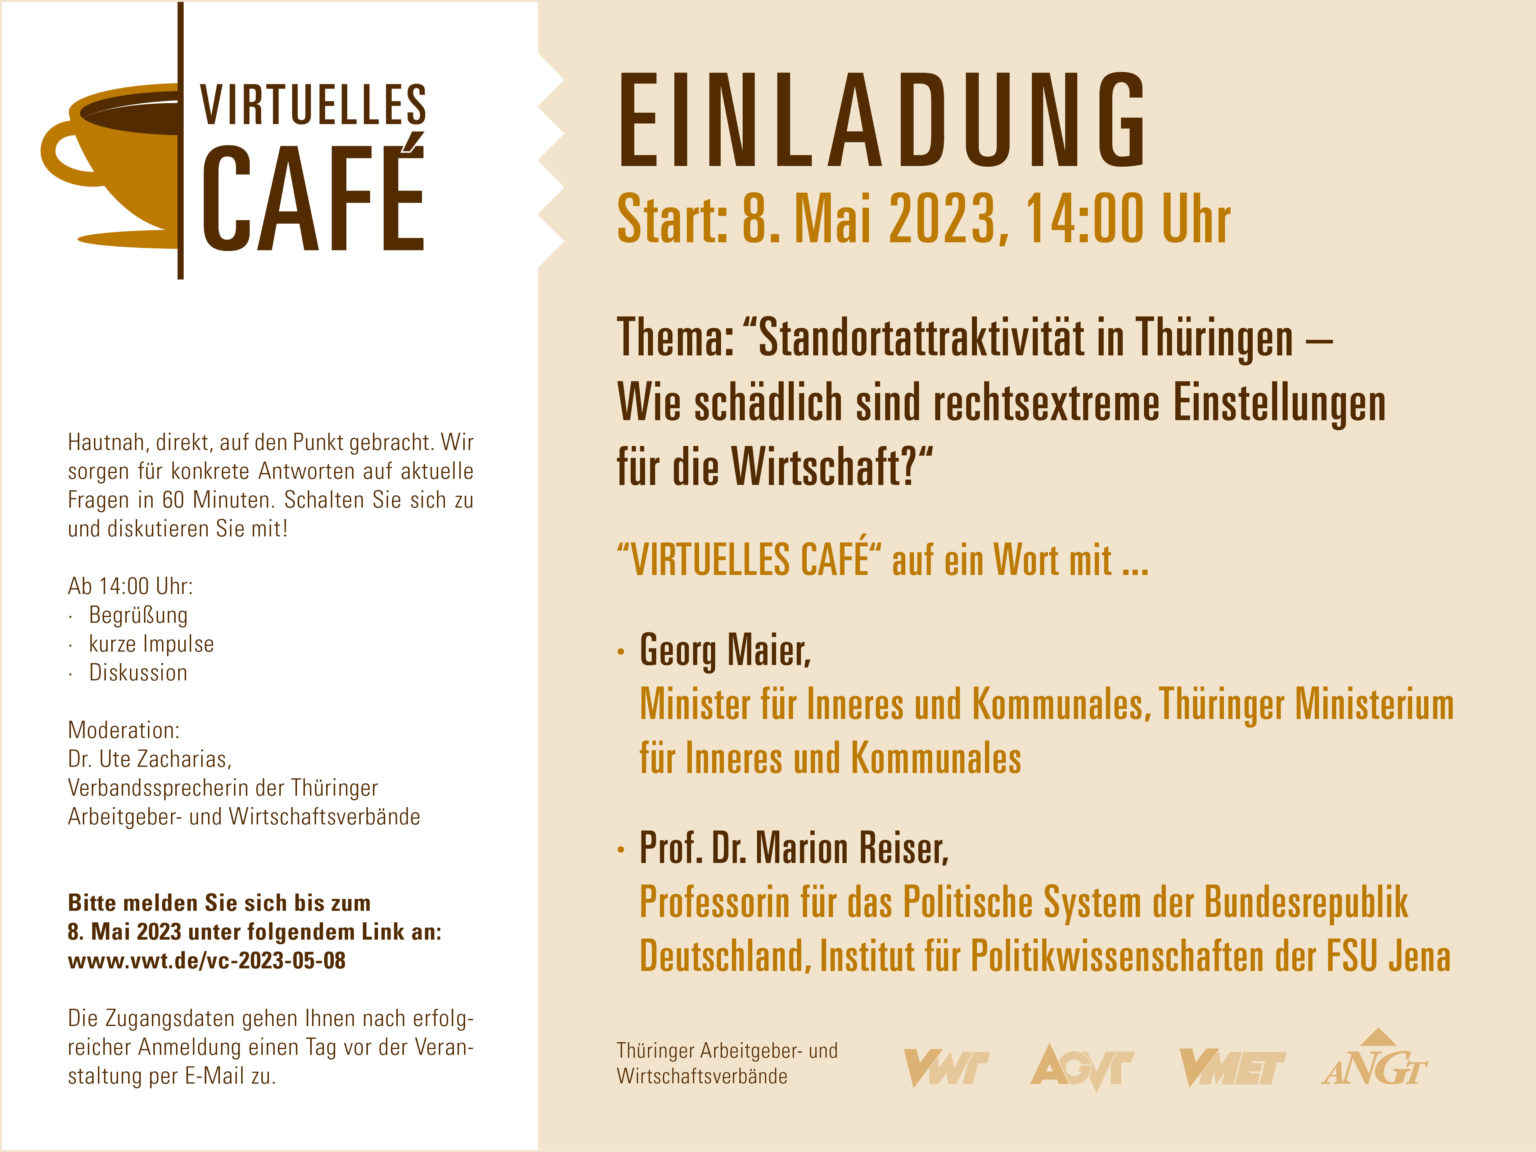 V Cafe Einl. 8.5.2023 1536x1152